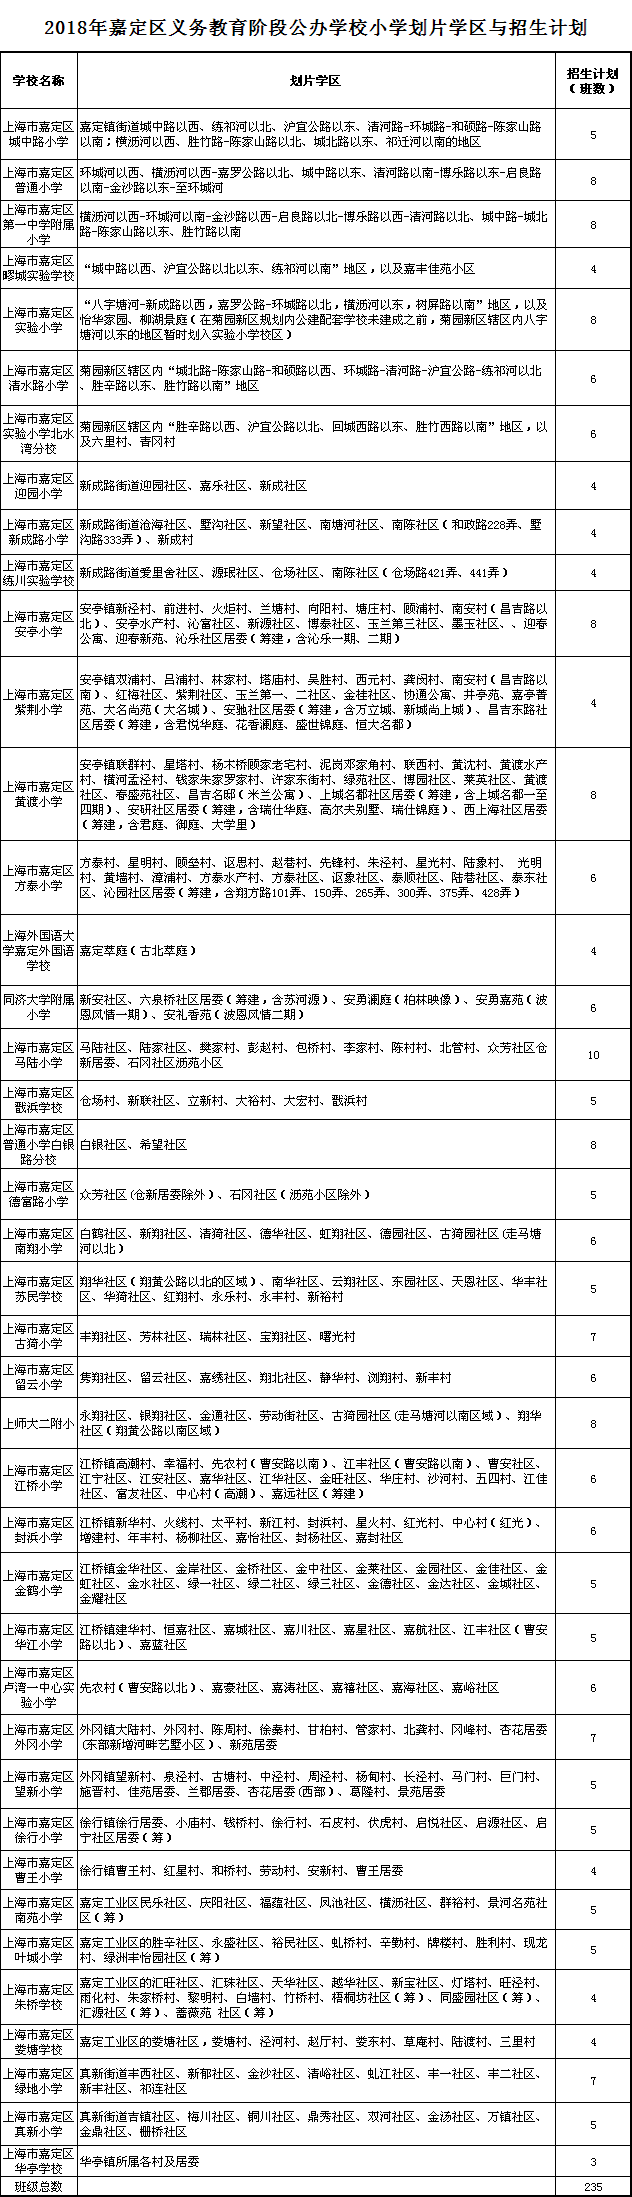 2018年上海市嘉定区中小学招生划片范围公布1